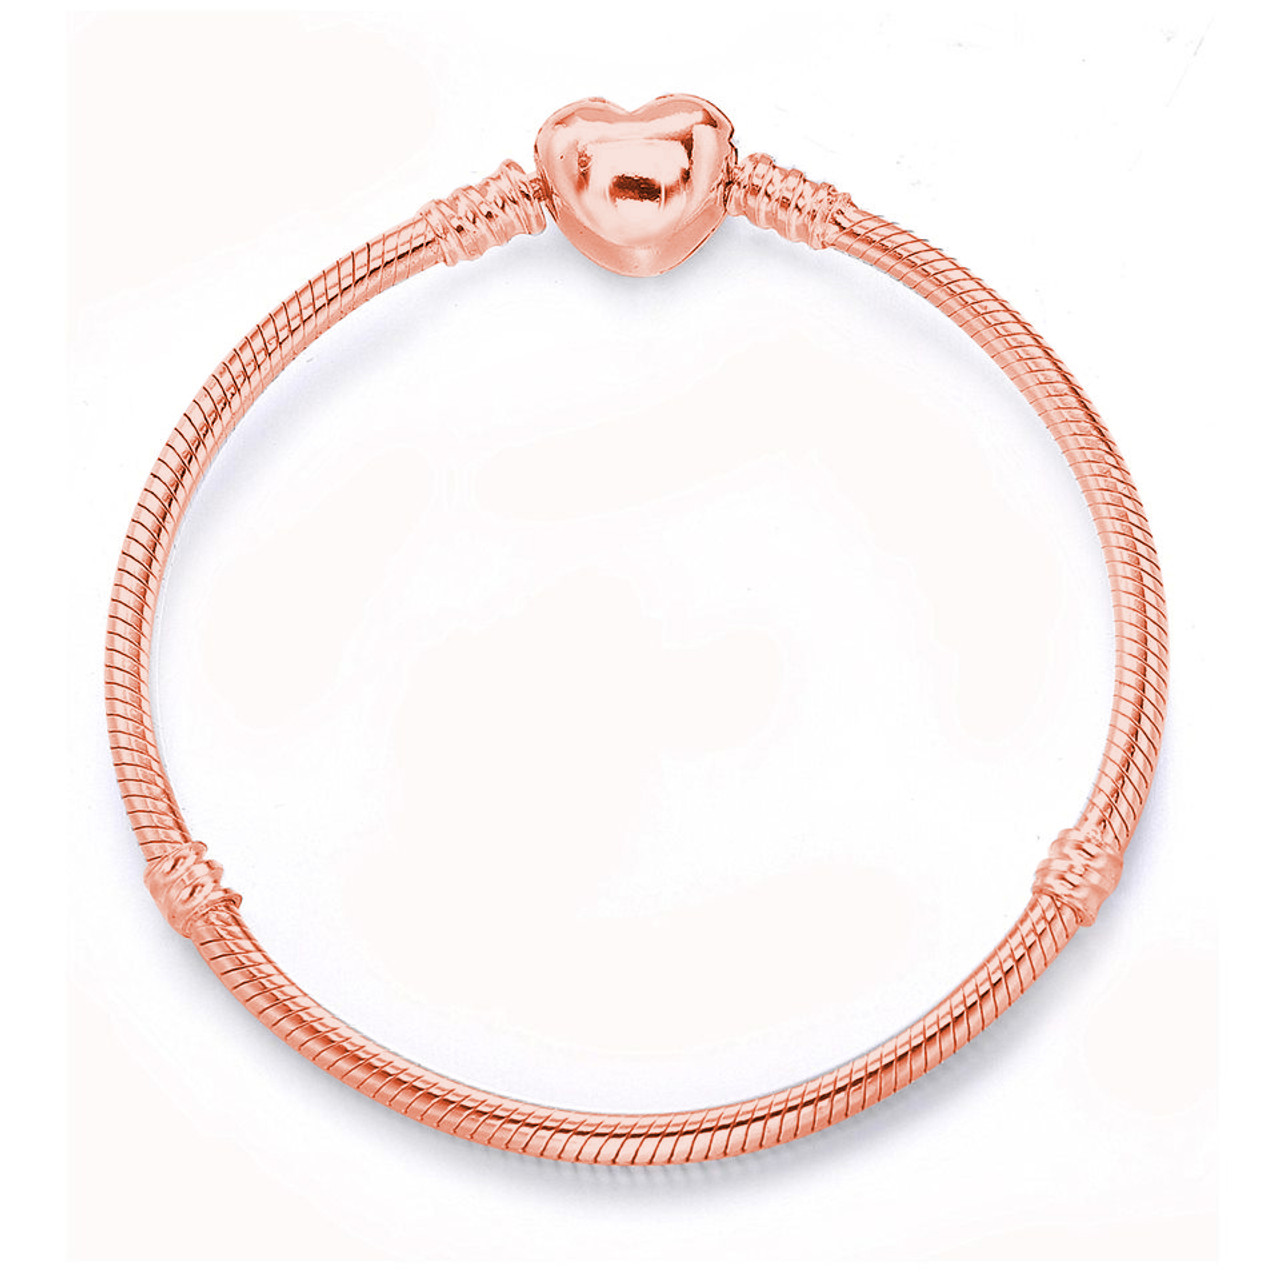 Elsa Peretti® Diamonds by the Yard® Open Heart bracelet in 18k rose gold. |  Tiffany & Co.